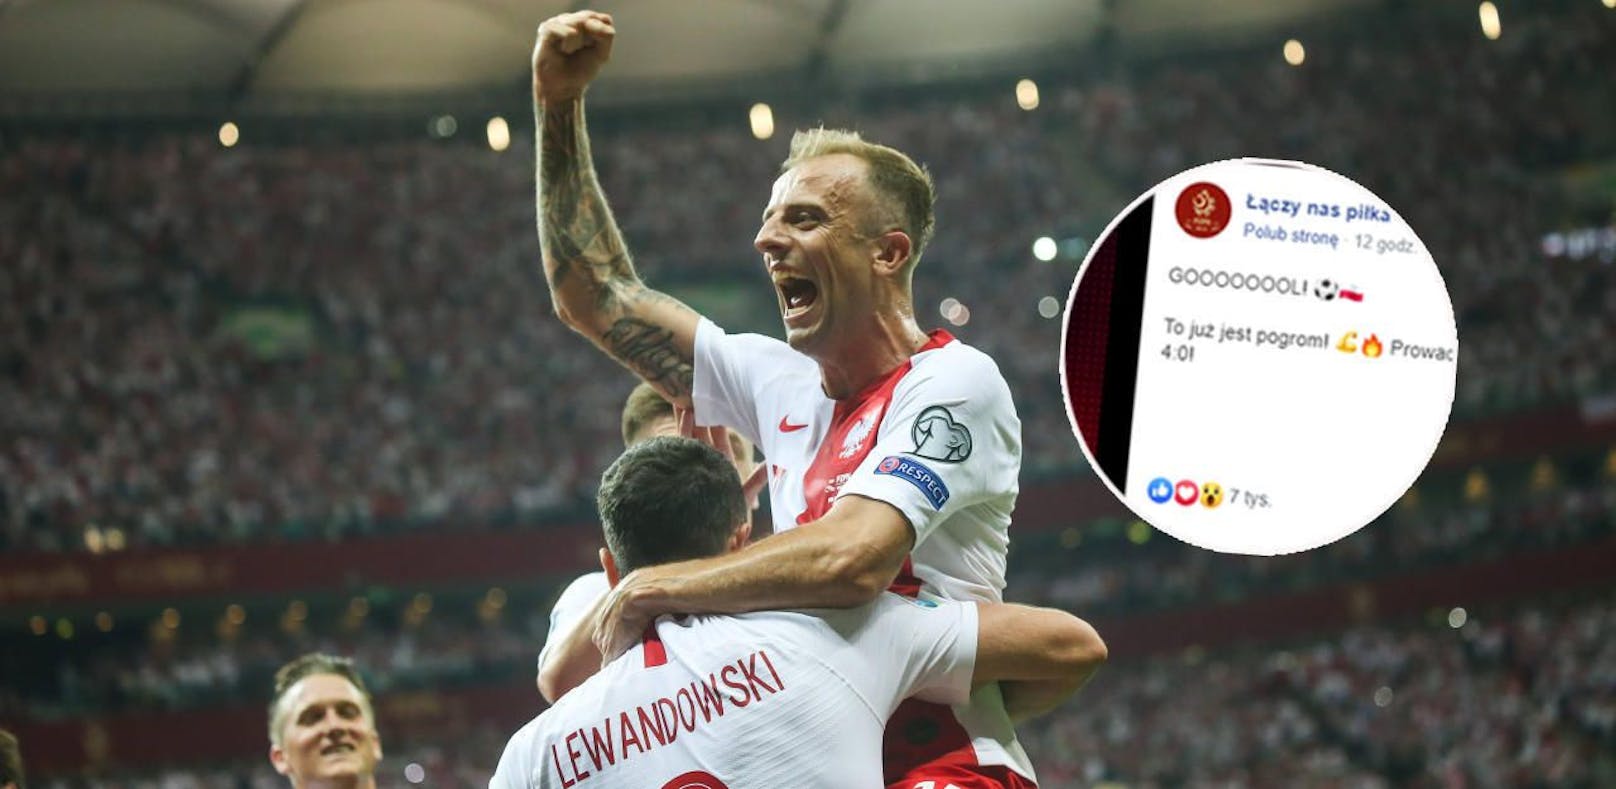 Polen jubelte über den Sieg gegen Israel. Das Social-Media-Team vergriff sich dabei gewaltig im Ton.